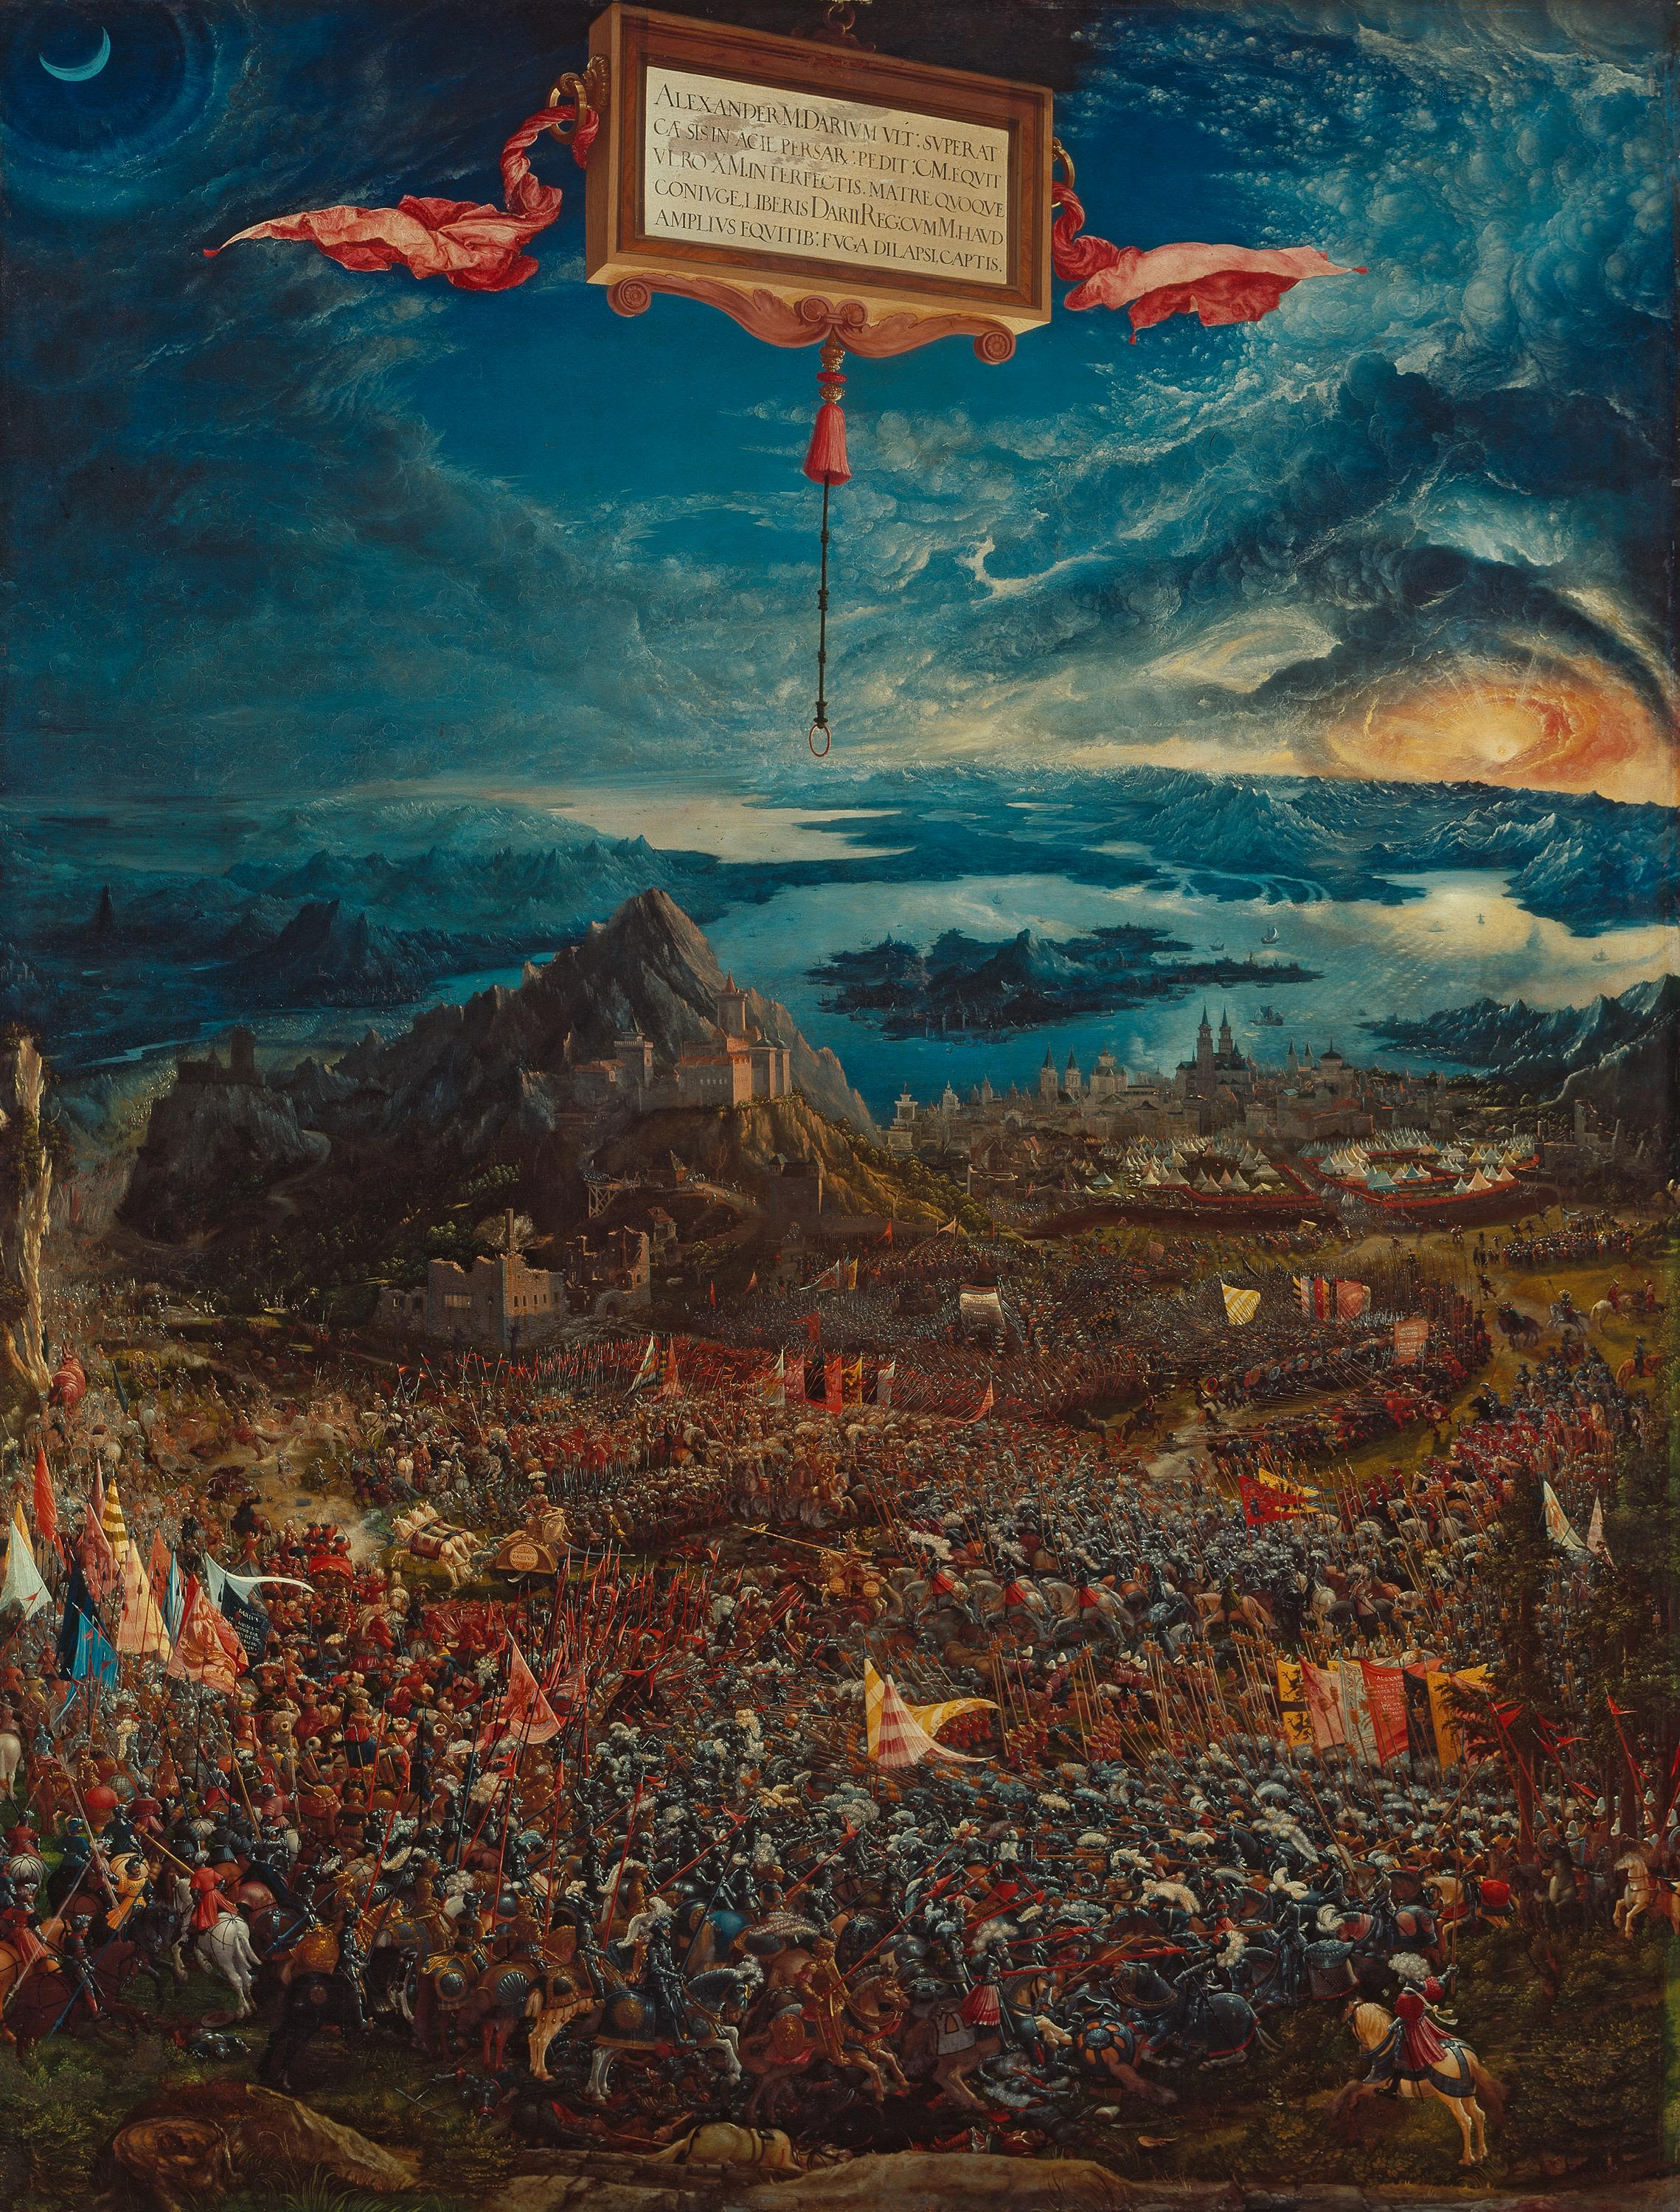 アレクサンダー大王の戦い by Albrecht Altdorfer - 1529年 - 158.4 x 120.3 cm 